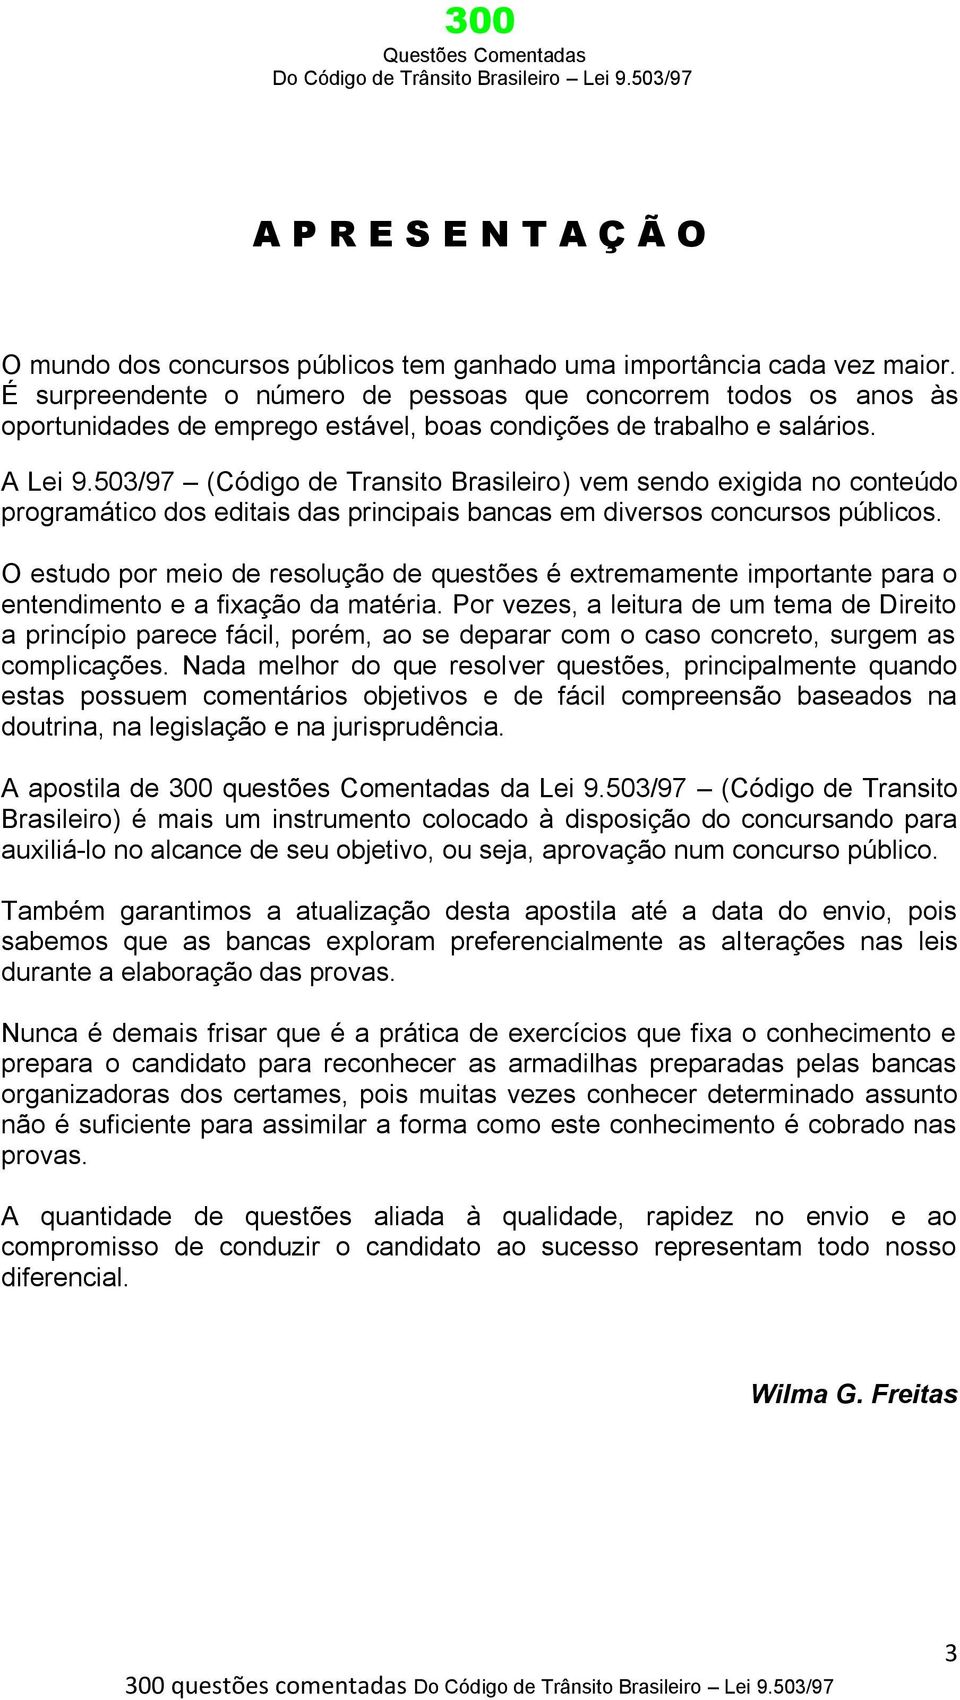 503/97 (Código de Transito Brasileiro) vem sendo exigida no conteúdo programático dos editais das principais bancas em diversos concursos públicos.